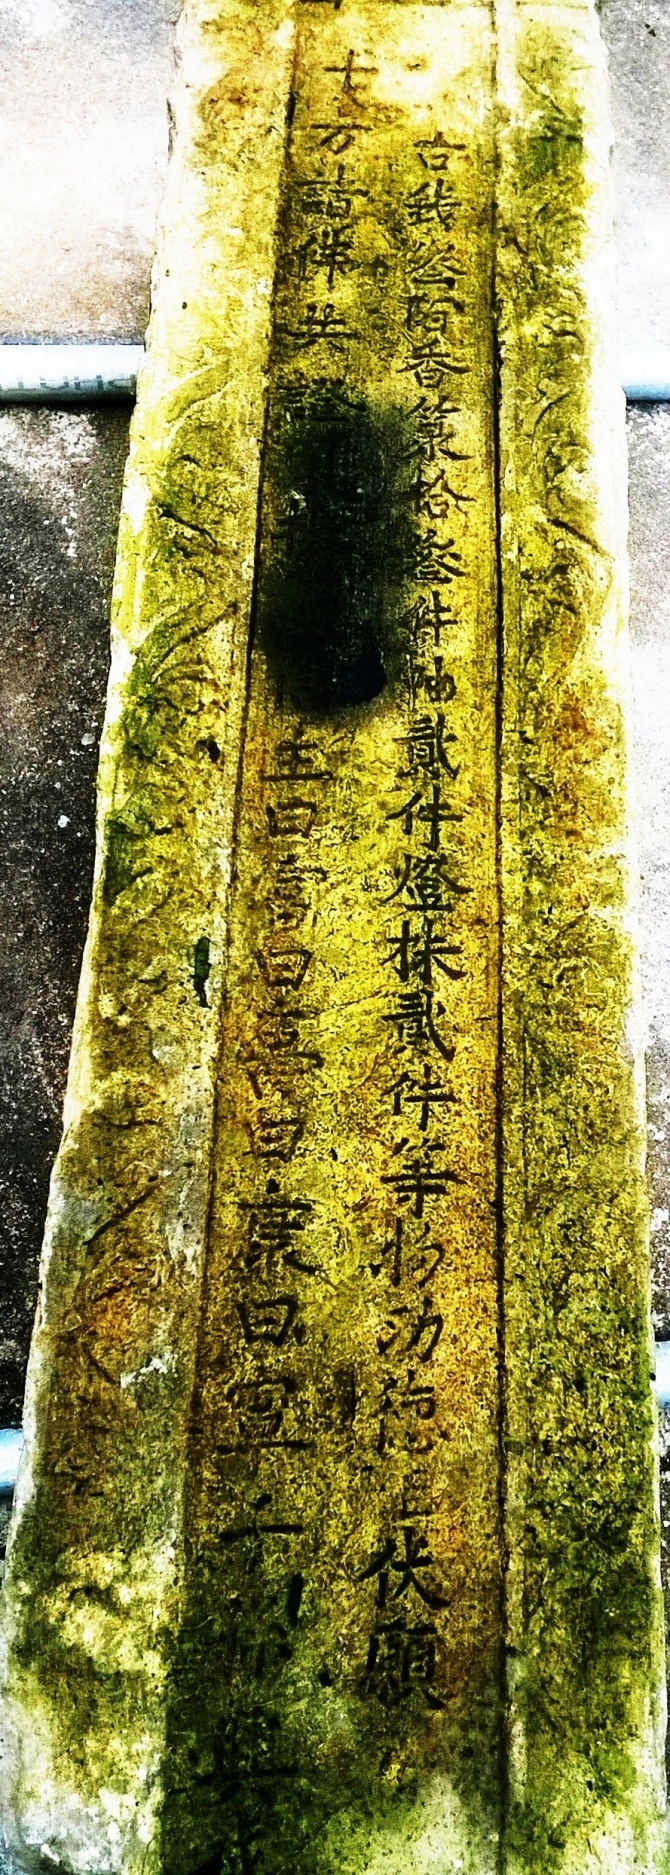 Bia đá cổ được phát hiện tại phế tích chùa Hưng Long, Hà Tĩnh có giá trị văn hóa 